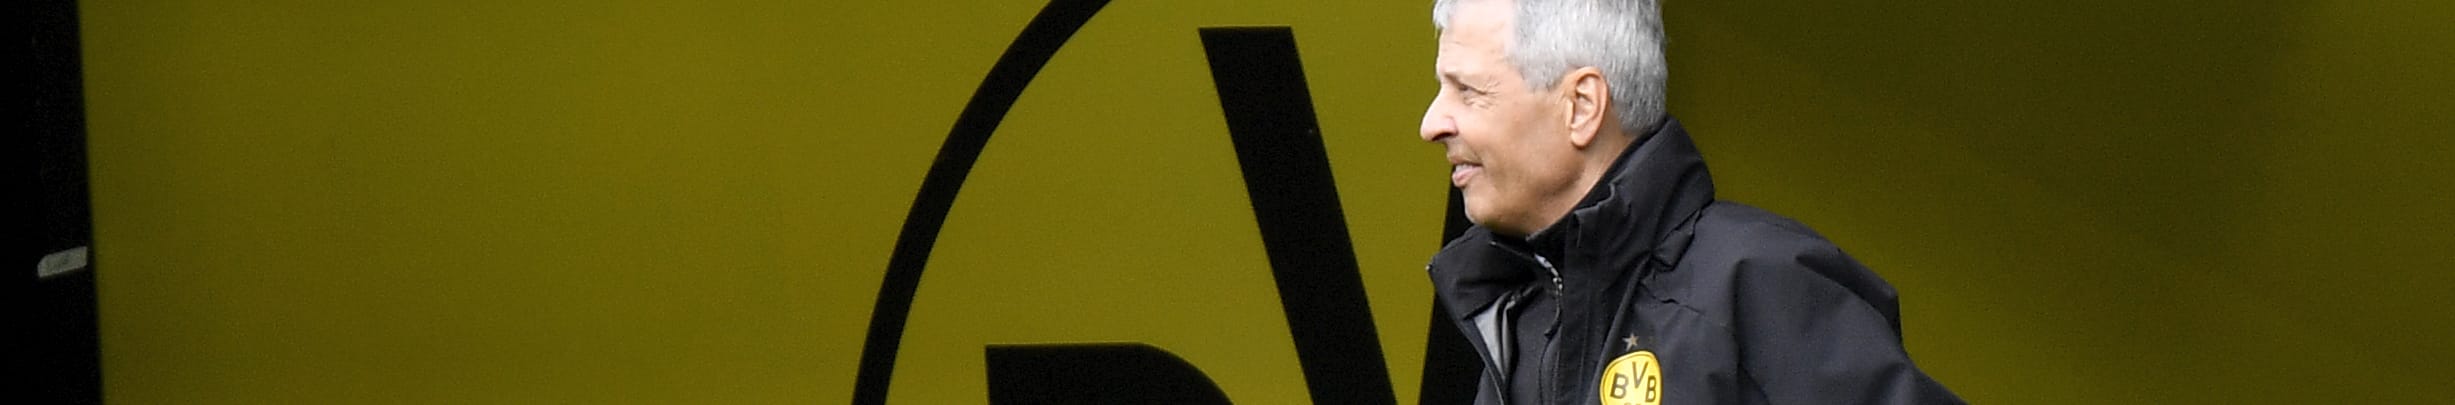 Quote Paderborn-Borussia Dortmund: Favre vuole tenere al sicuro il 2° posto